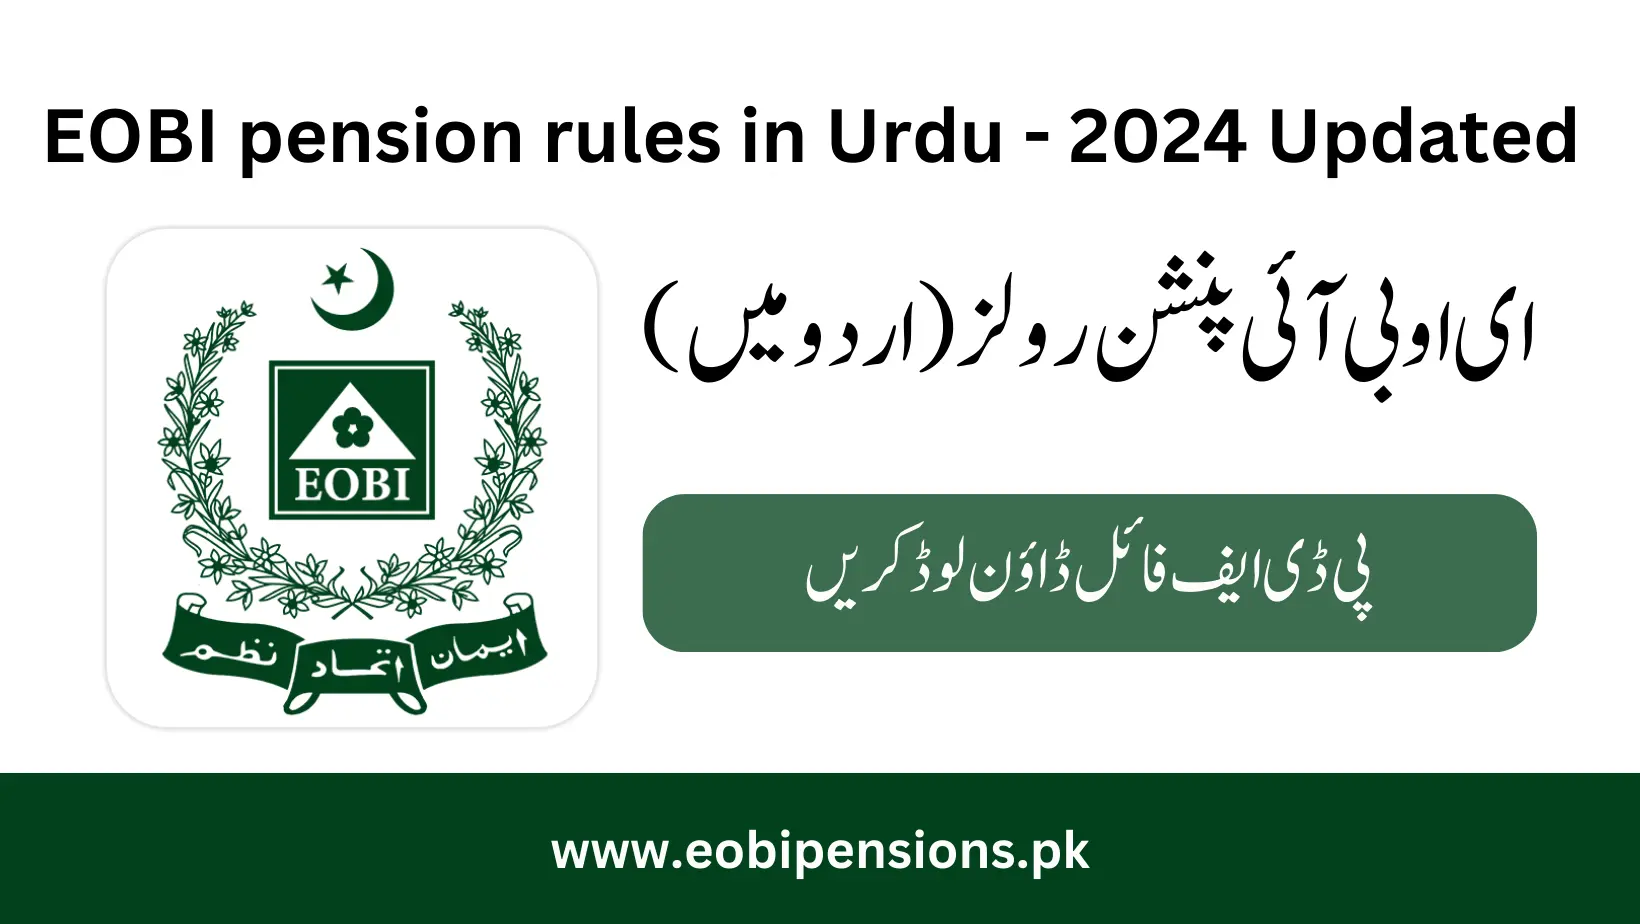 EOBI pension rules in Urdu